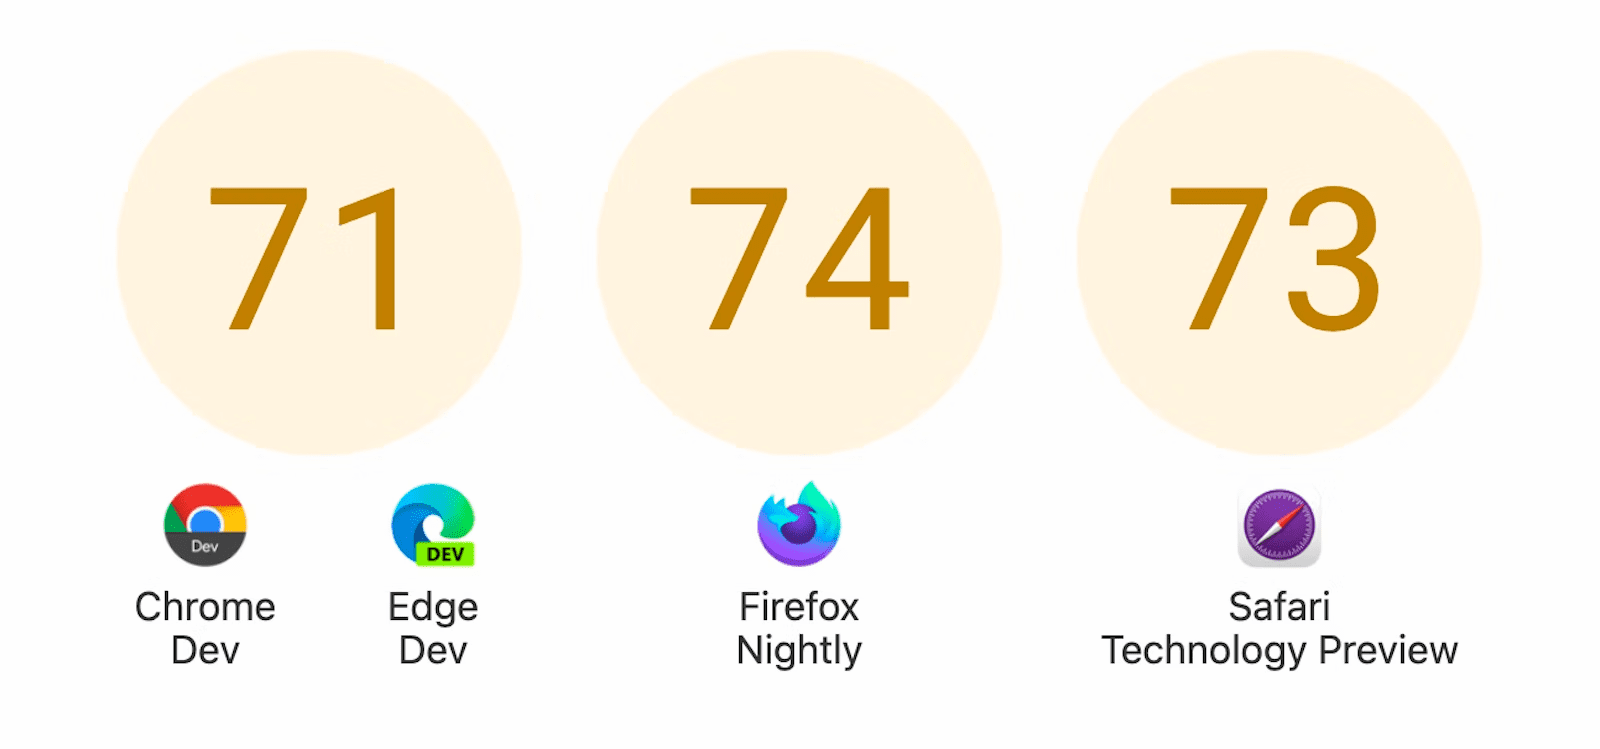 顯示三個標有分數的圓圈：Chrome 開發人員版和 Edge Dev 機型：71 代表 Firefox 夜間，Safari 技術預覽為 73。